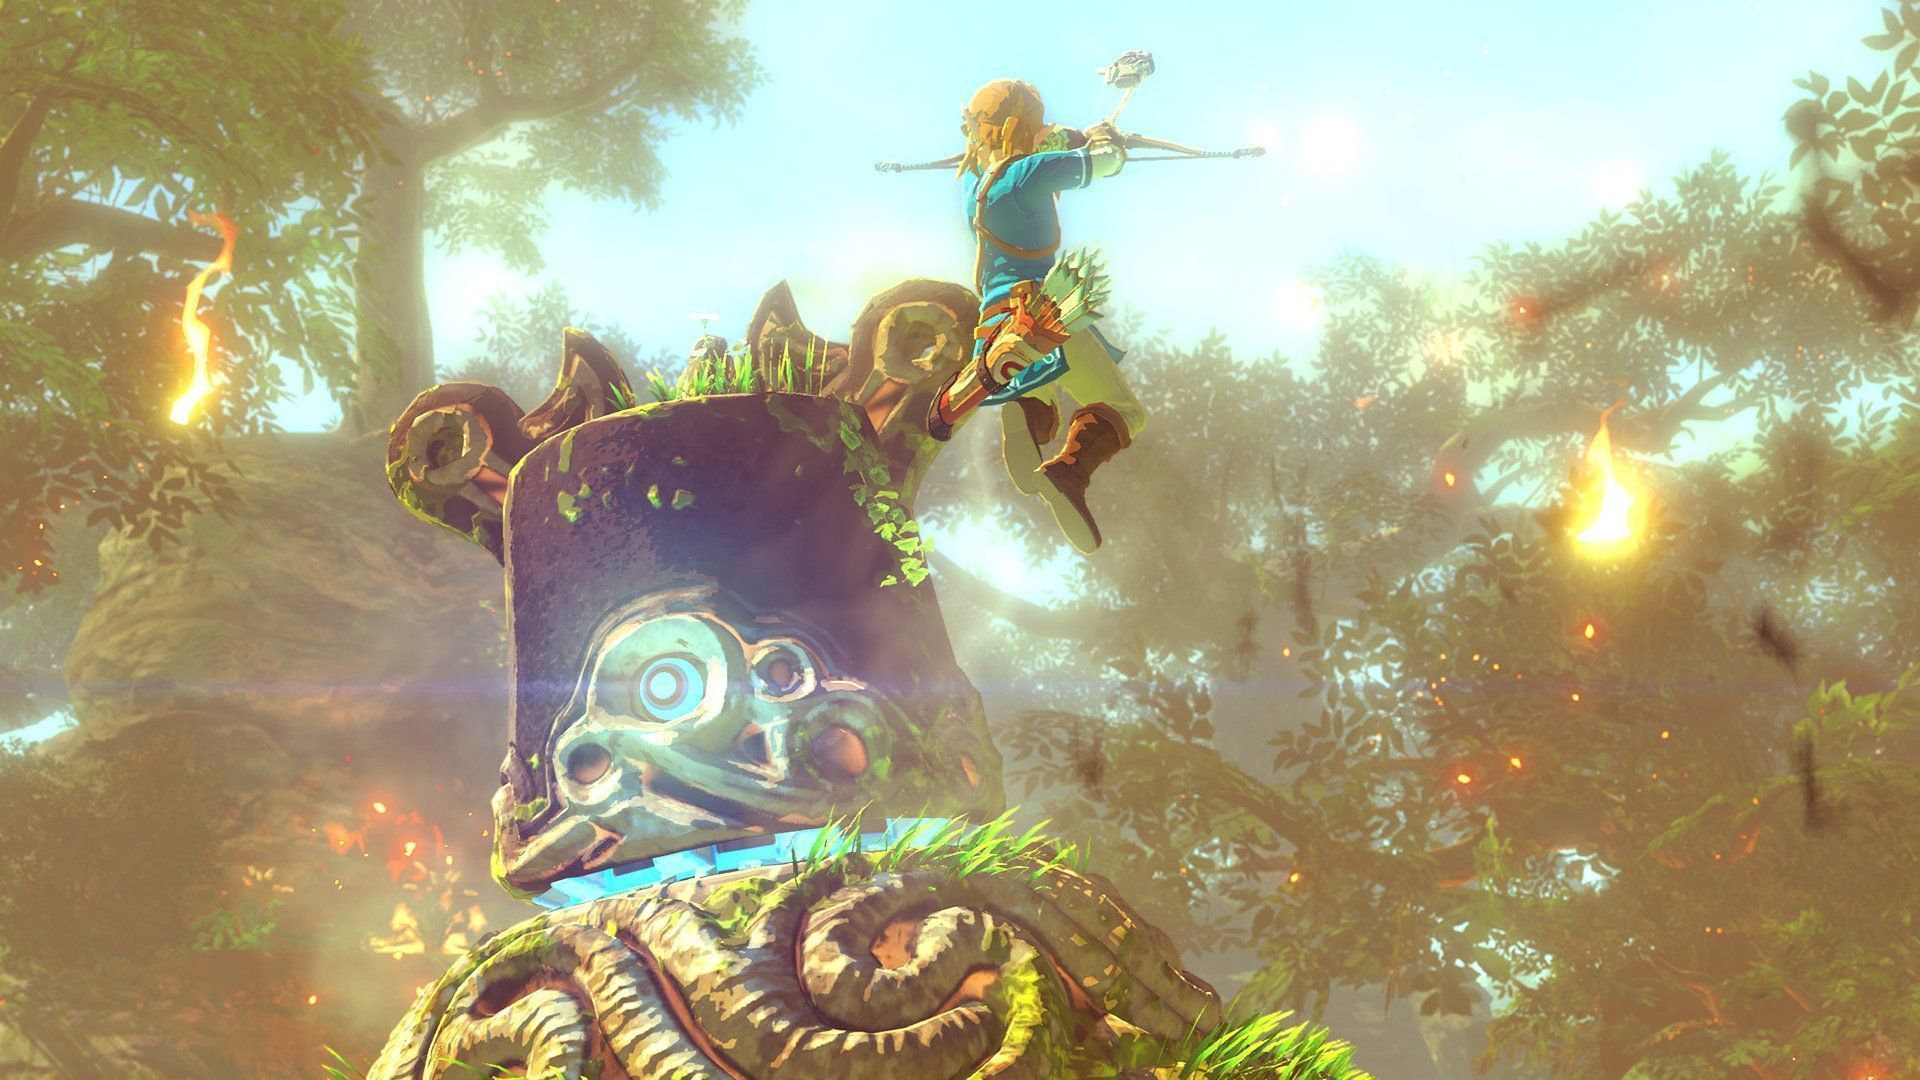 8 The Legend Of Zelda Wii U HD Wallpapers | Backgrounds ...